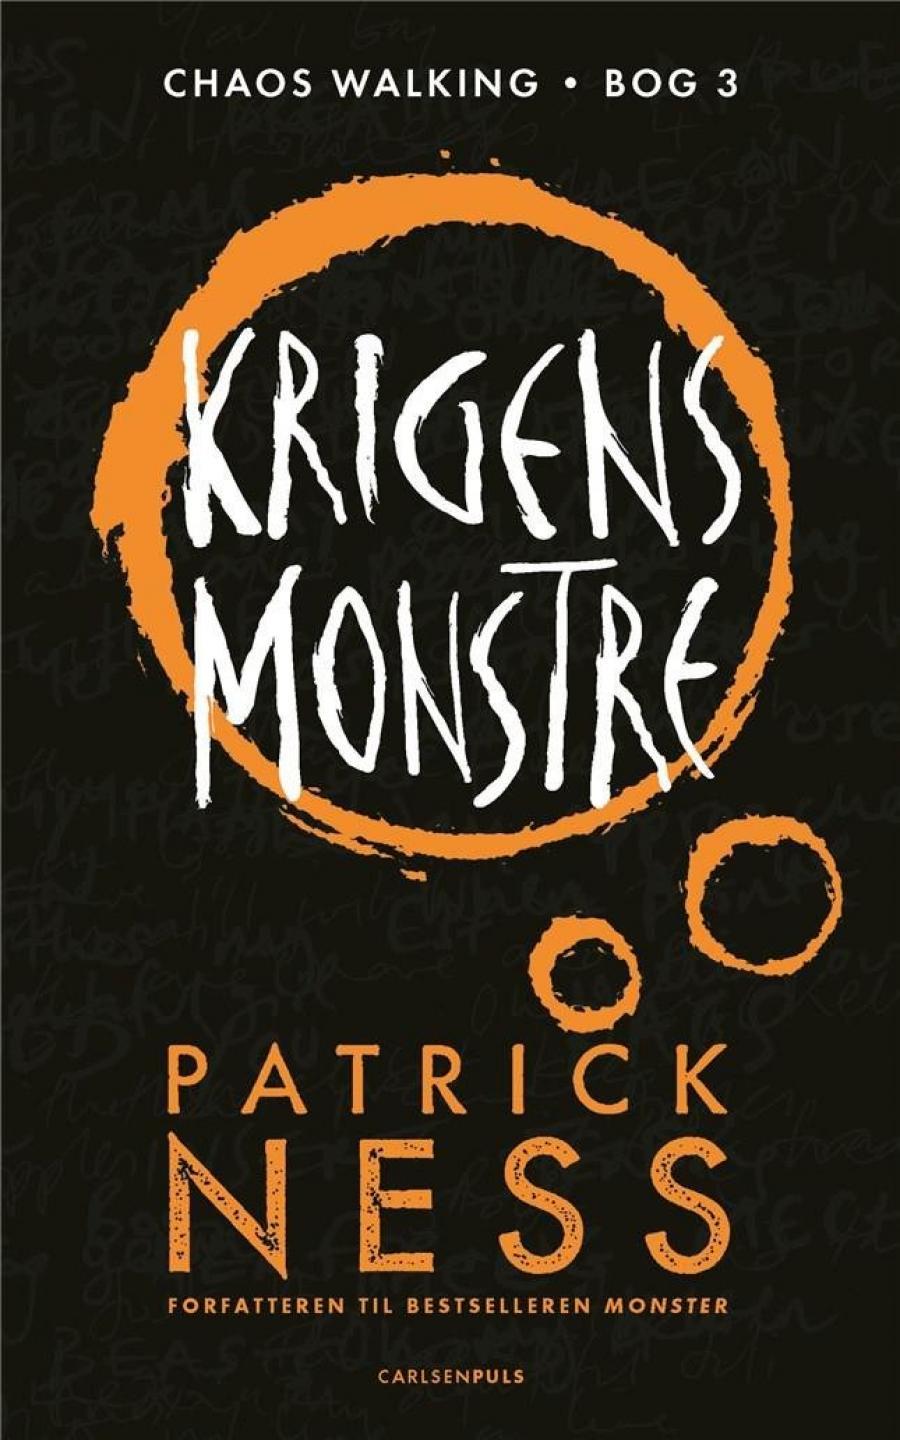 Billede af bogen Krigens monstre af Patrick Ness